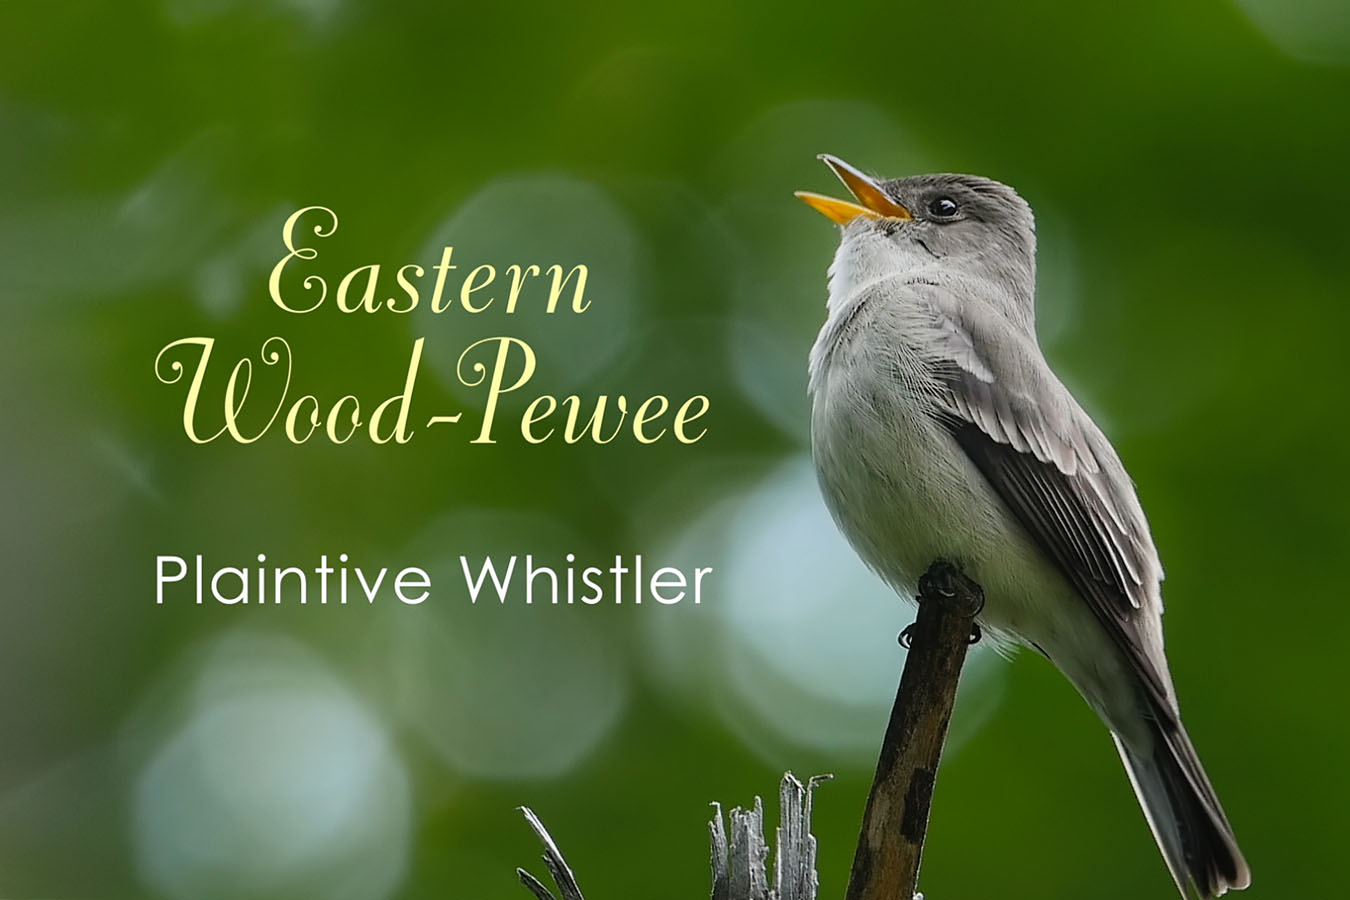 Eastern Wood-Pewee - featured image © Lang Elliott